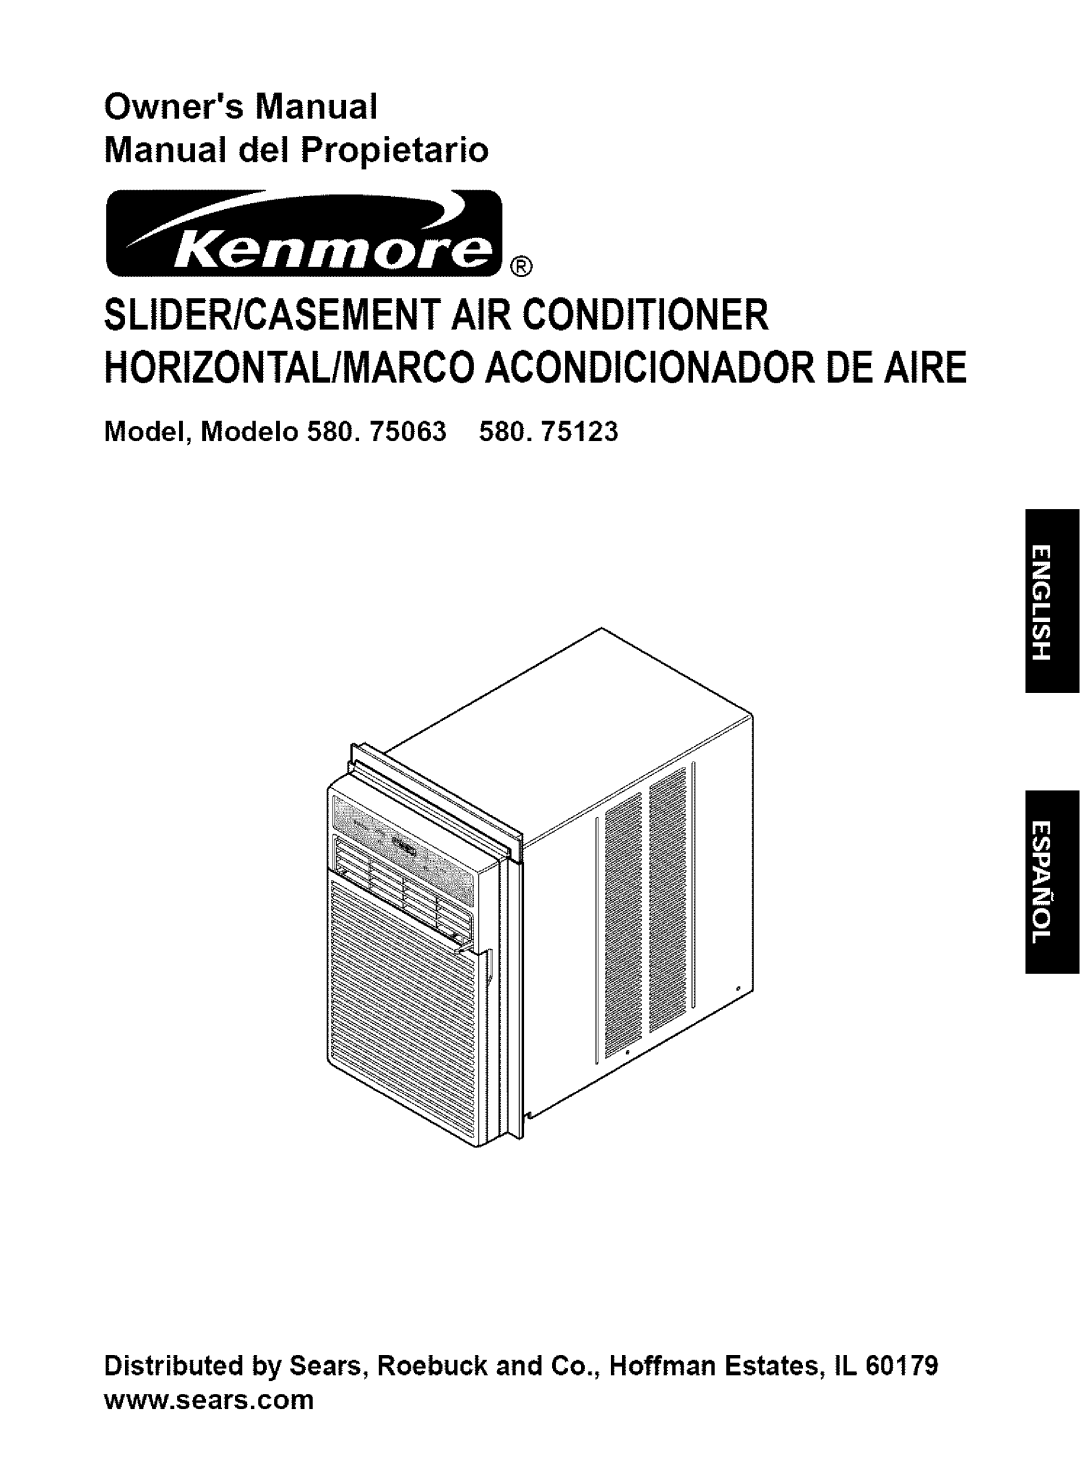 Kenmore 580.75123, 580. 75063 owner manual Model, Modelo 580 